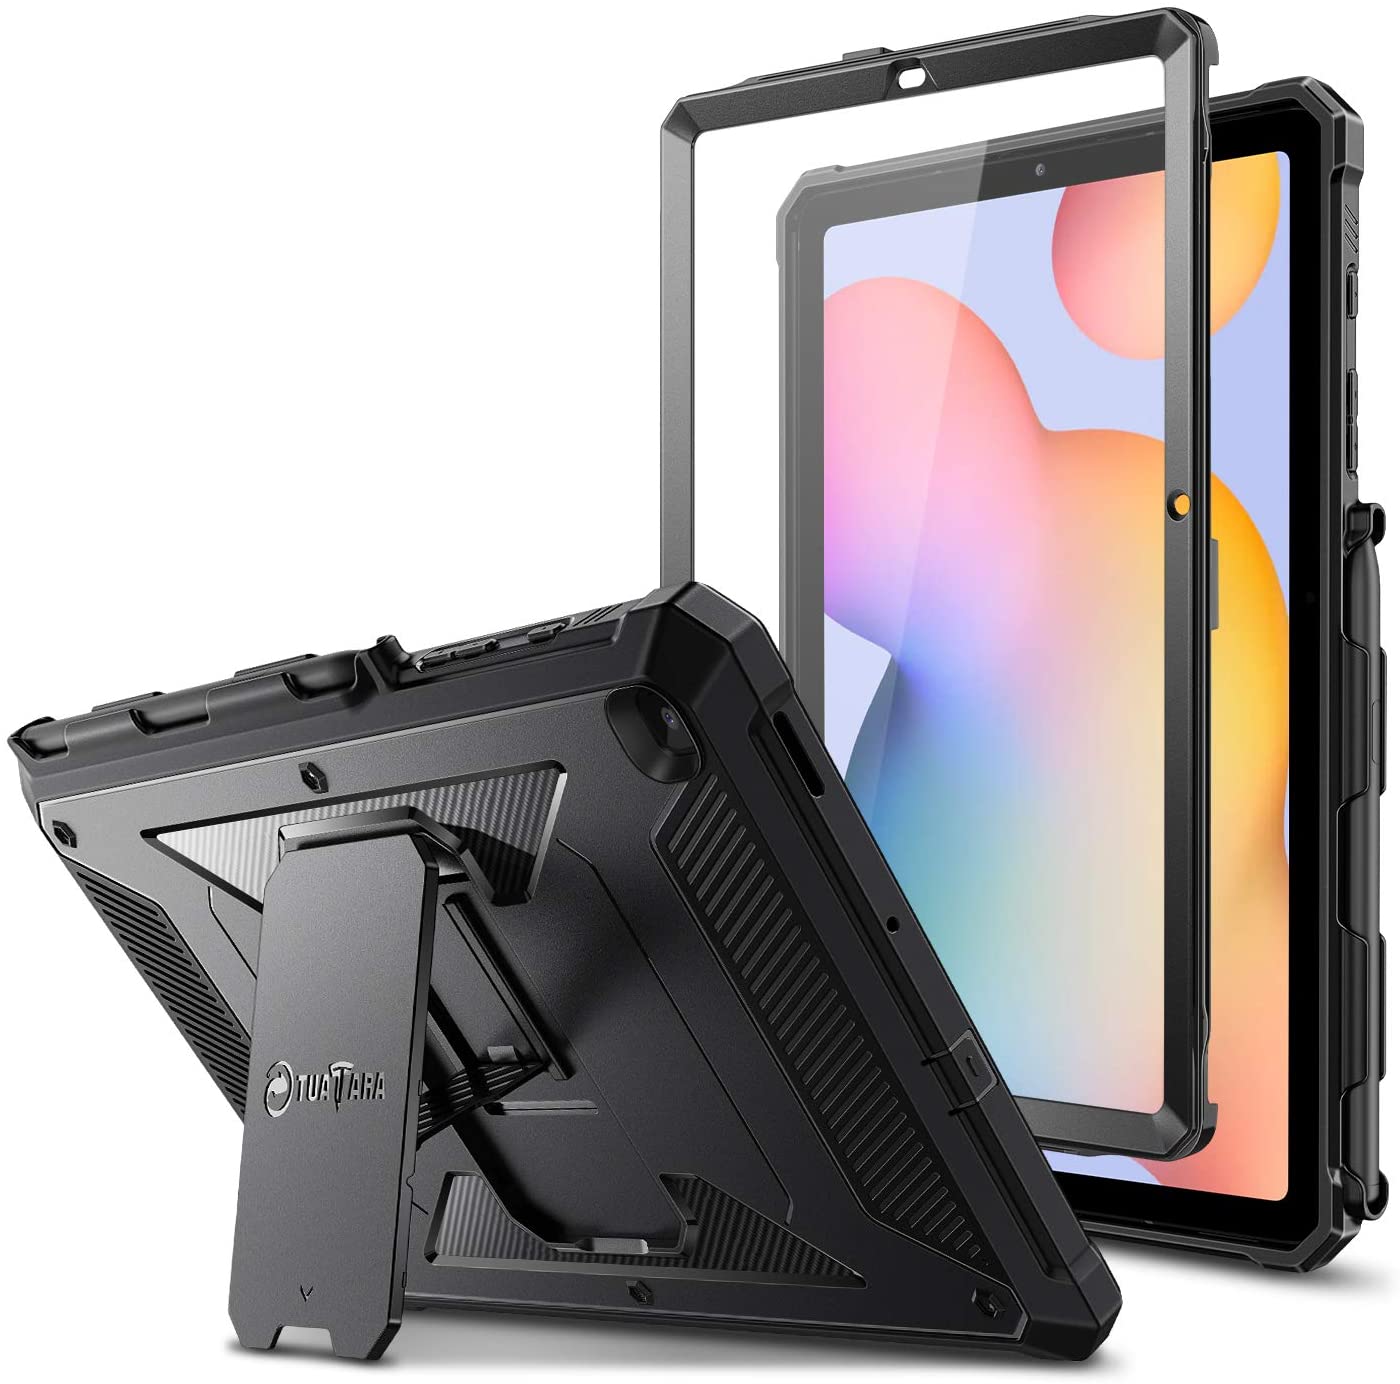 Funda a prueba de golpes para Samsung Galaxy Tab S6 Lite 10.4 pulgadas 2020 modelo SM-P610/P615 color negro